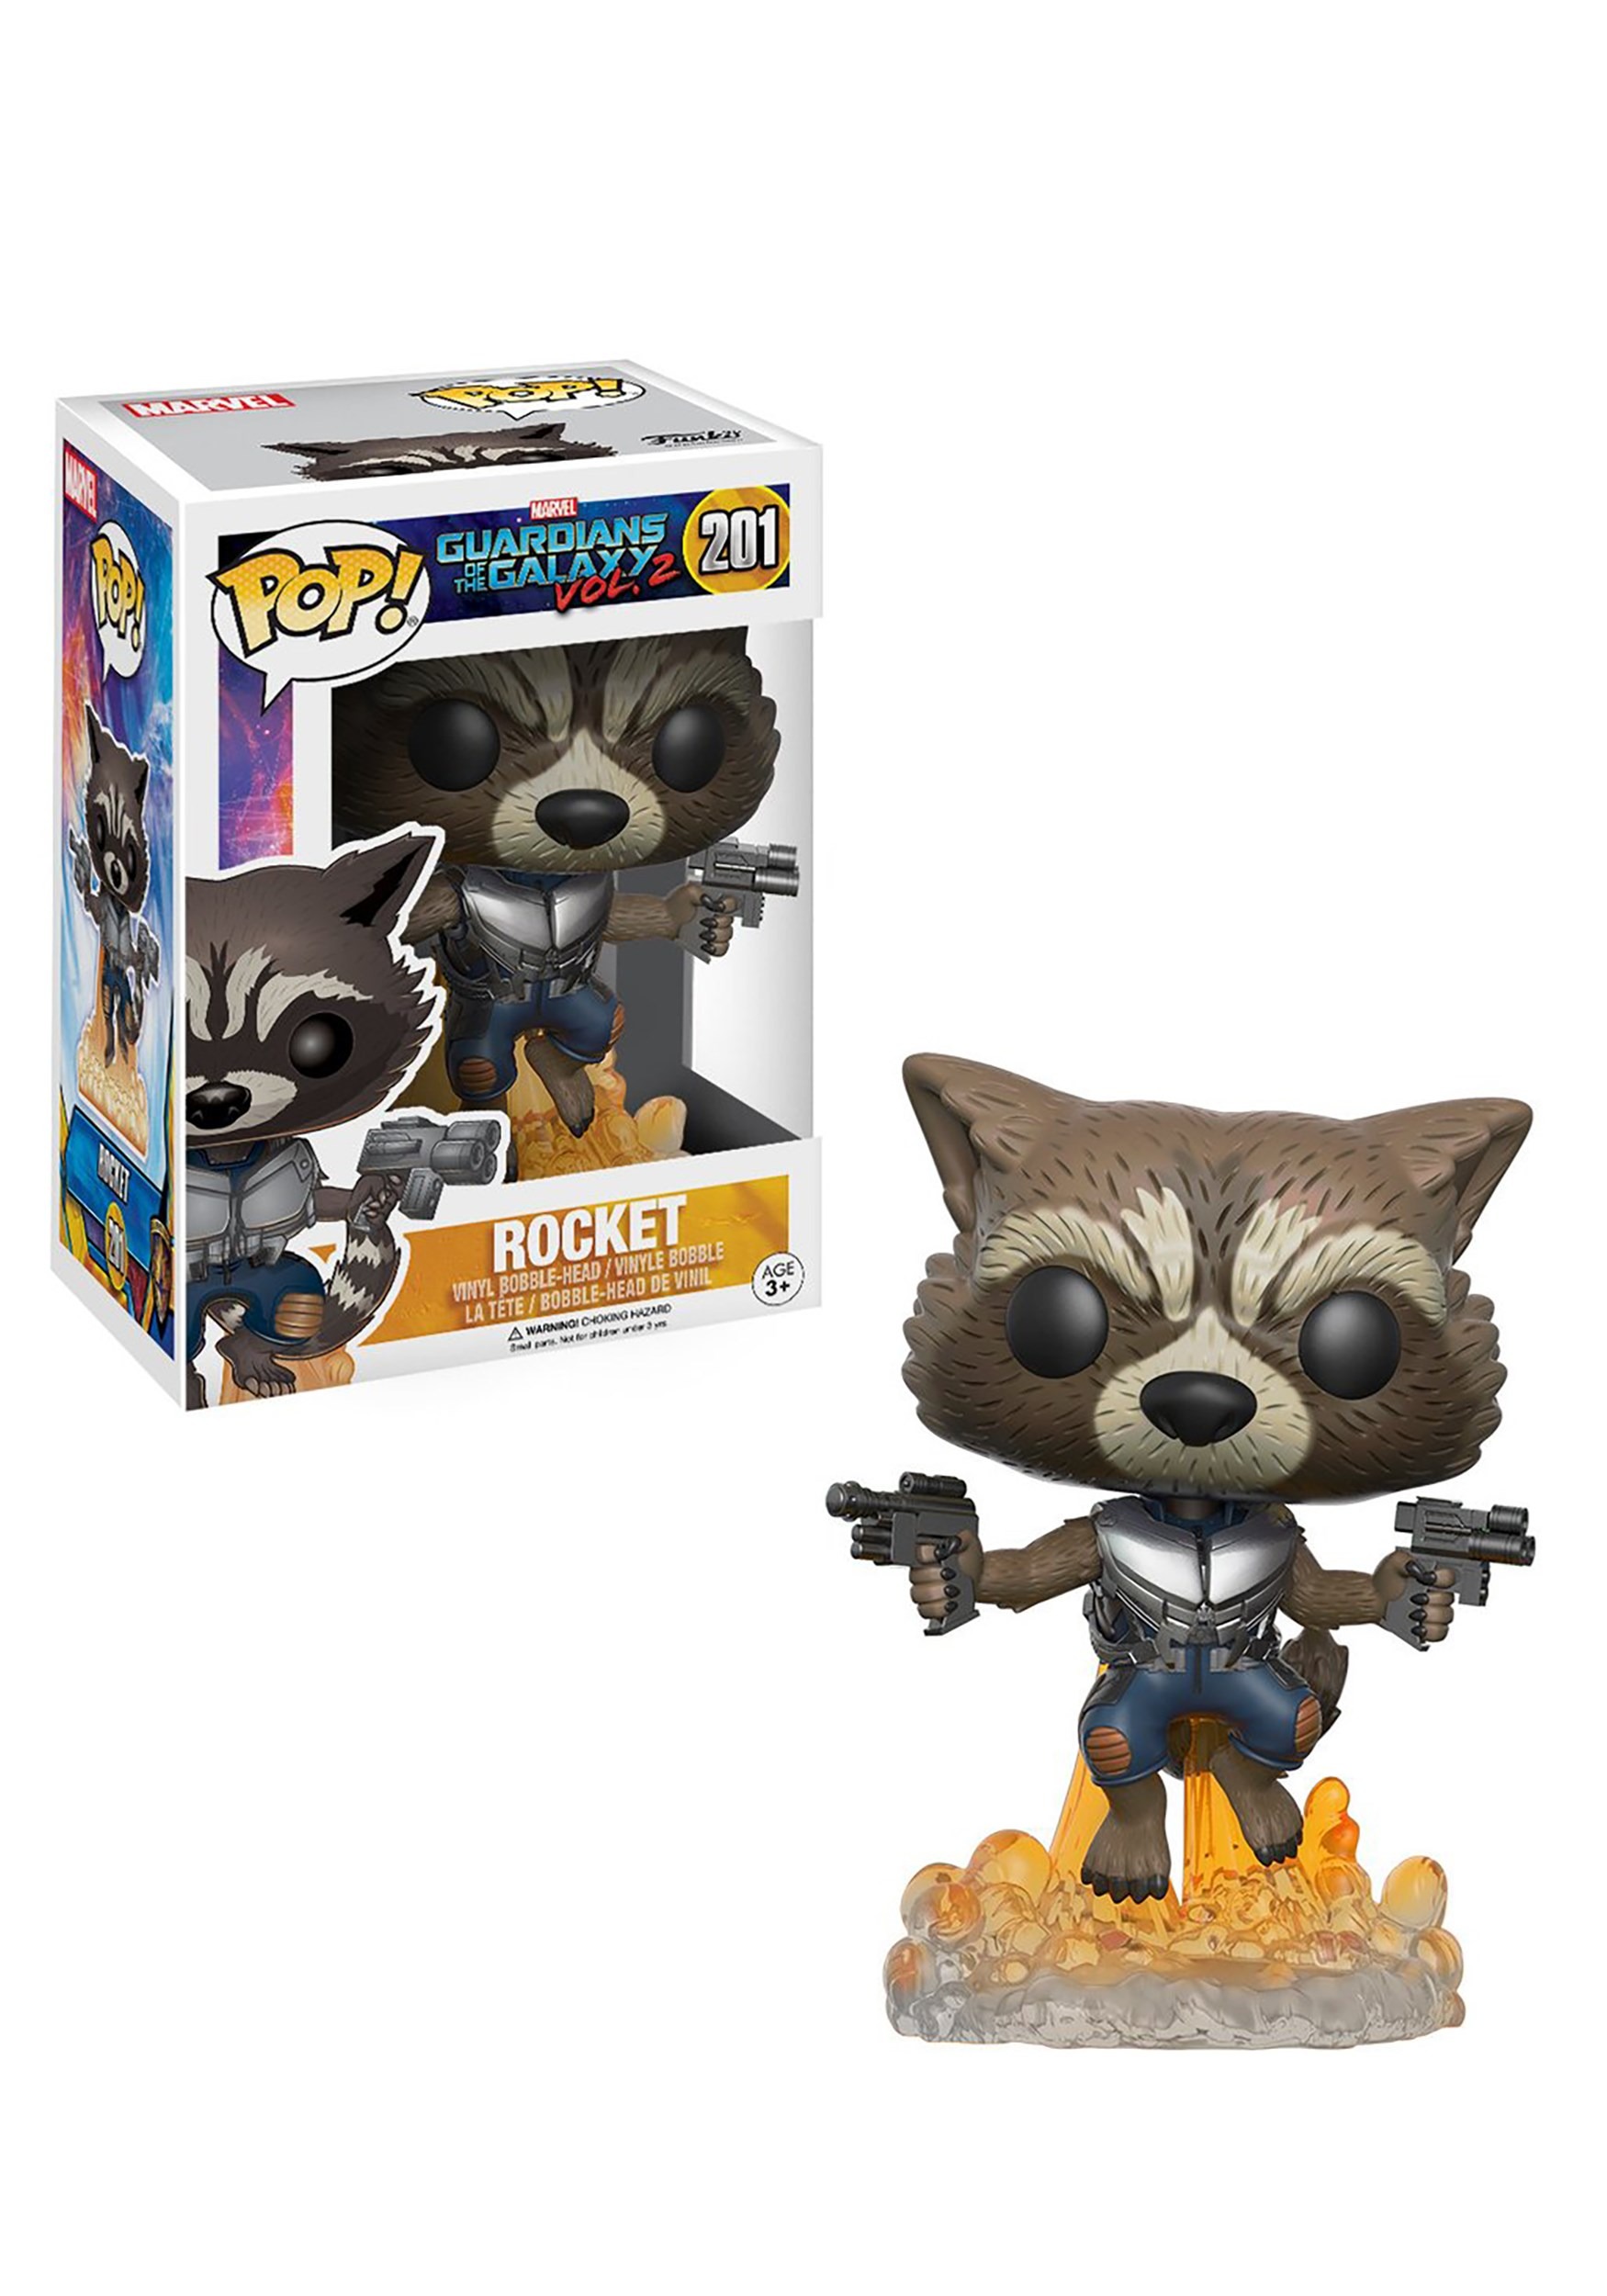 Funko POP Rocket Raccoon Bobblehead Figure from Guardians 2